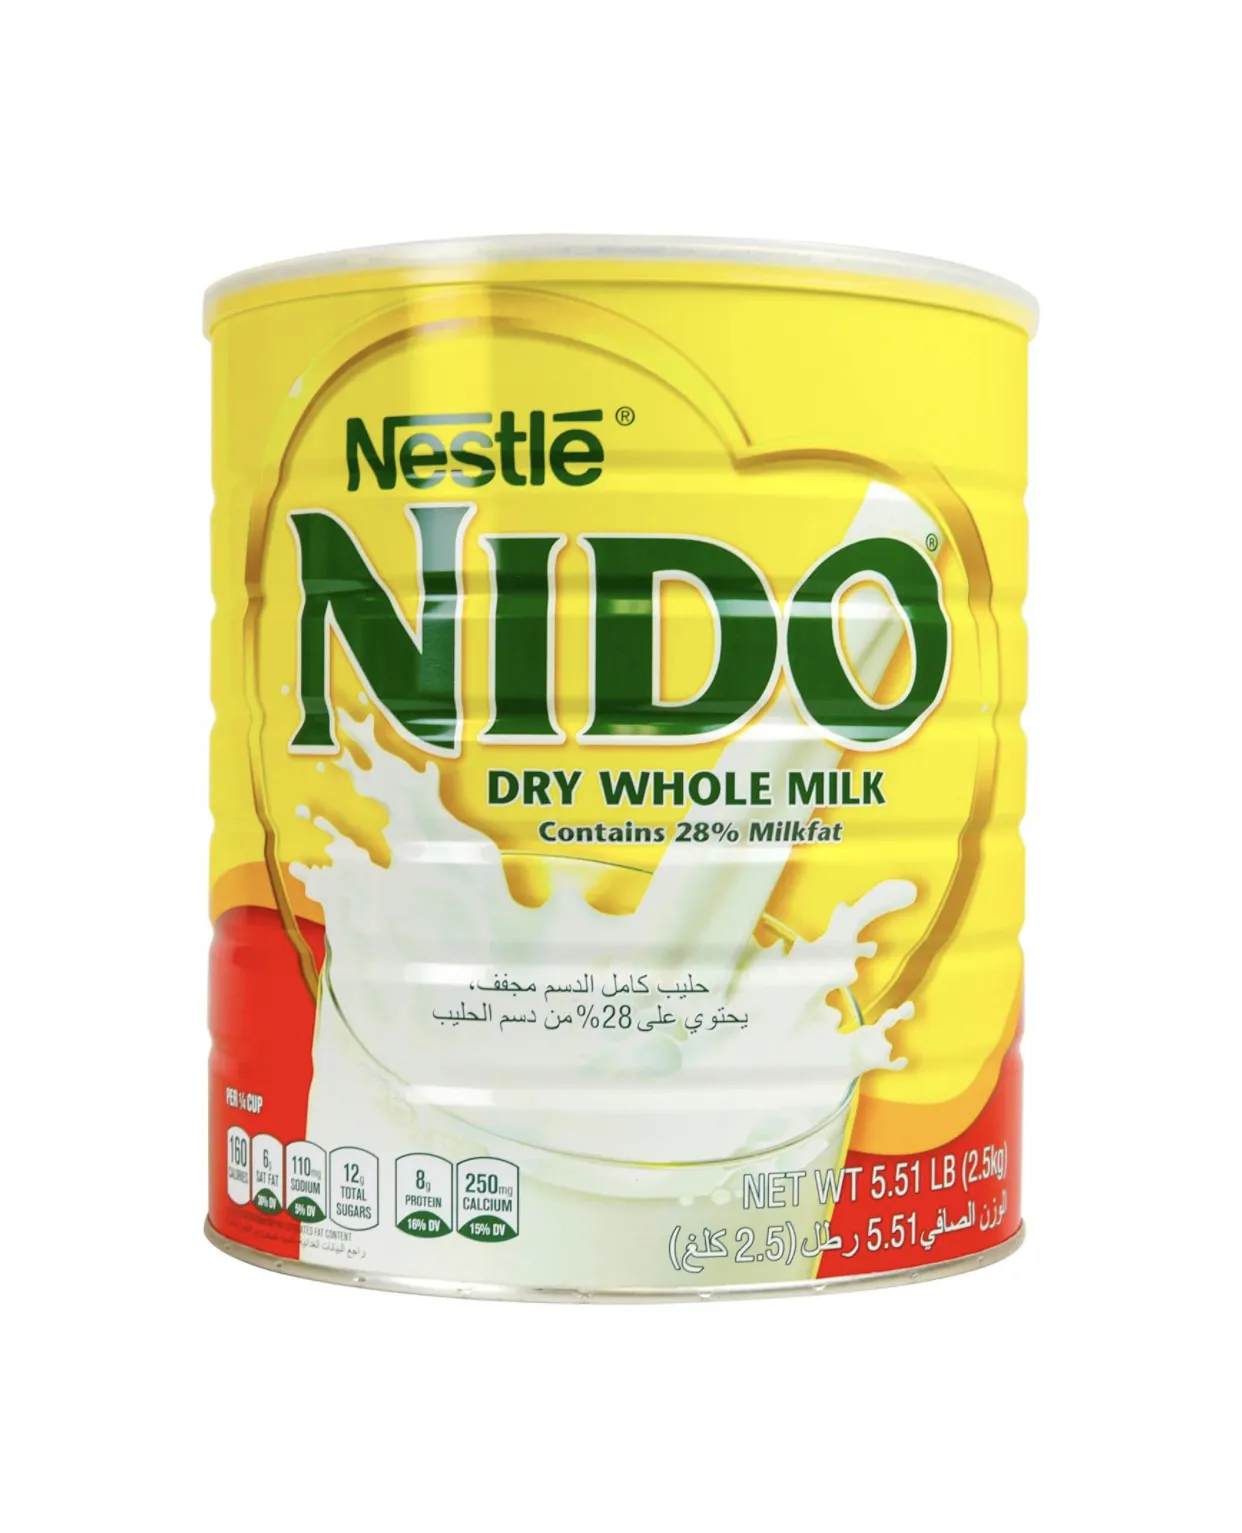 ベストセラー卸売ネスレニドミルクパウダー、特別に配合、ビタミンとミネラルで強化、缶詰パッキング2.5KG